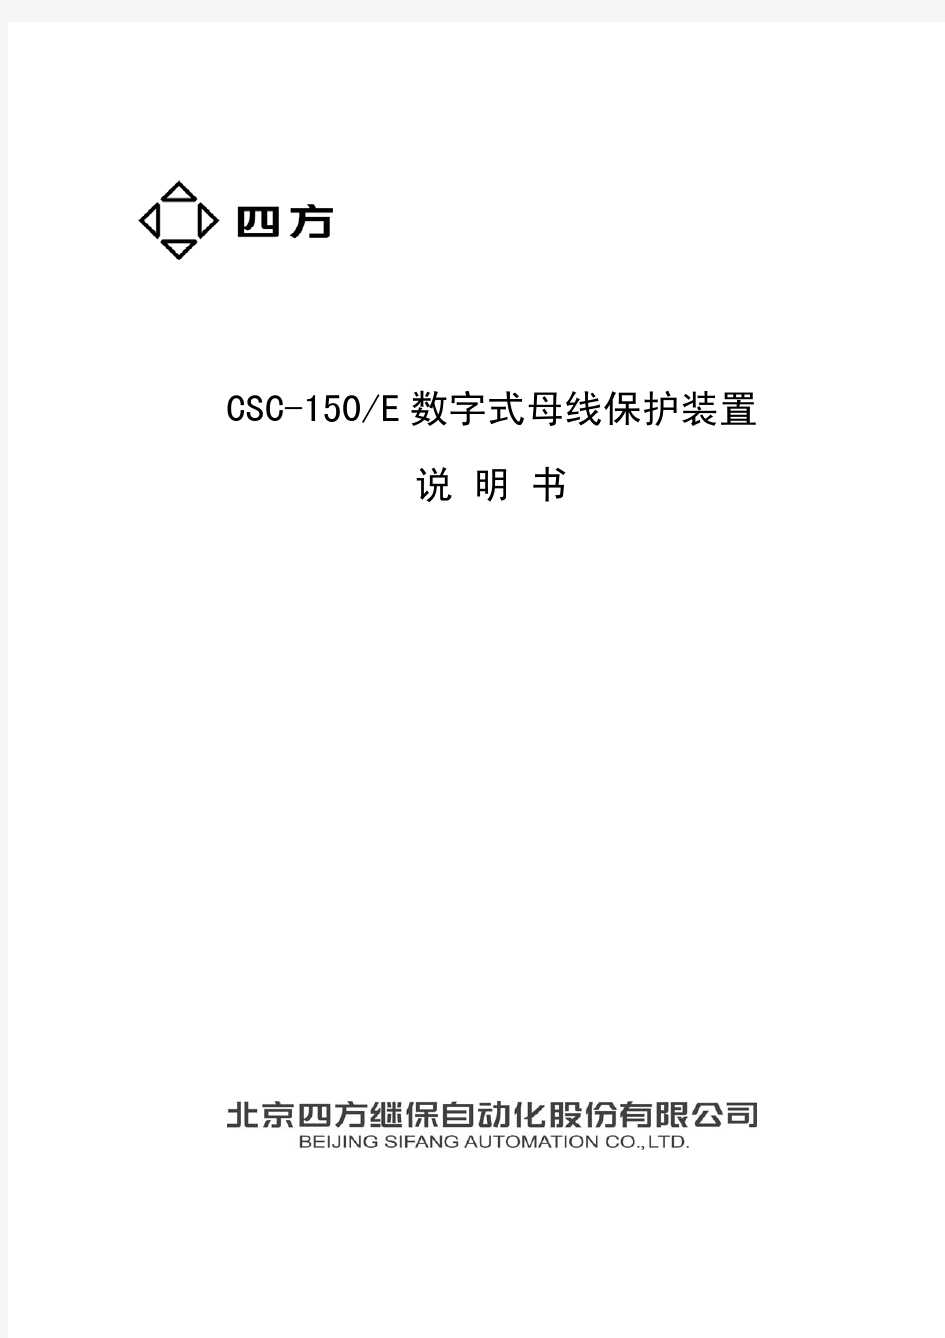 CSC-150E数字式母线保护装置说明书(0SF.450.079)_V1.0